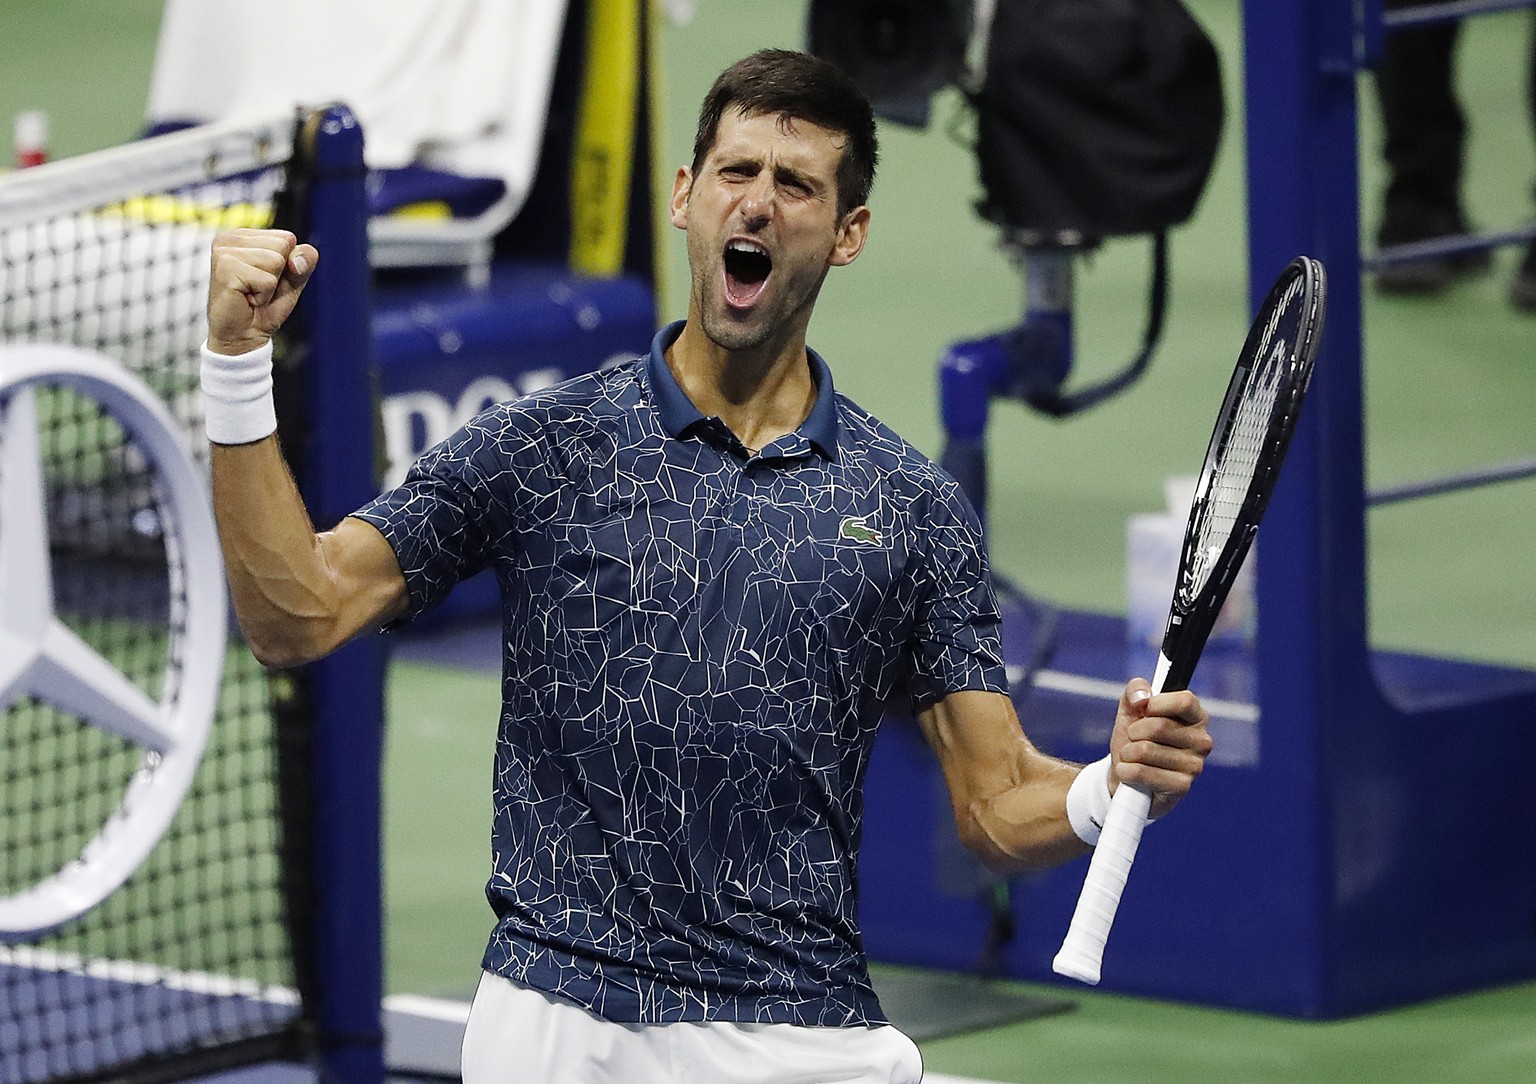 Es hat sich von Beginn an gut angefühlt», sagte Djokovic, der sich 17 Breakchancen erarbeitete. «Ich habe sehr, sehr gut gespielt.»